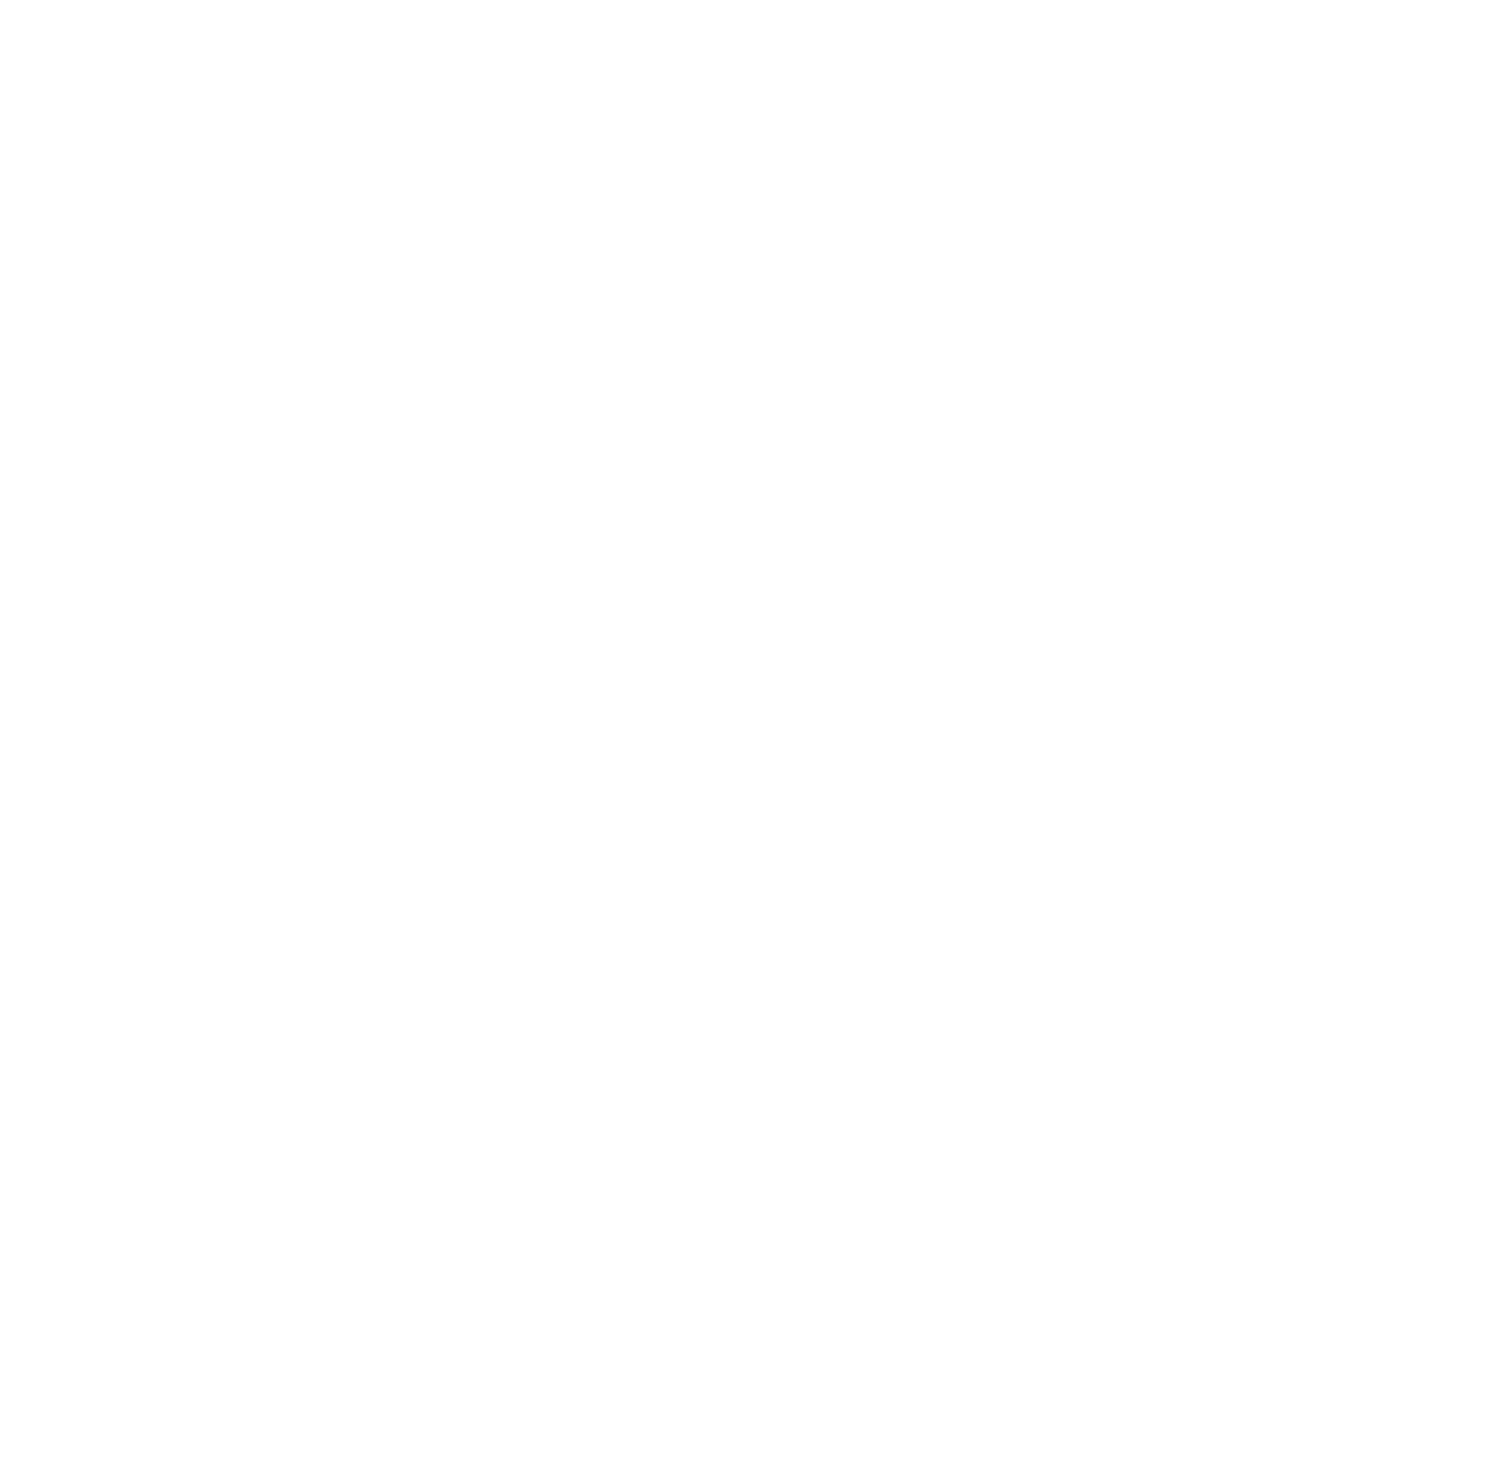 Hooker Furniture logo for dark backgrounds (transparent PNG)